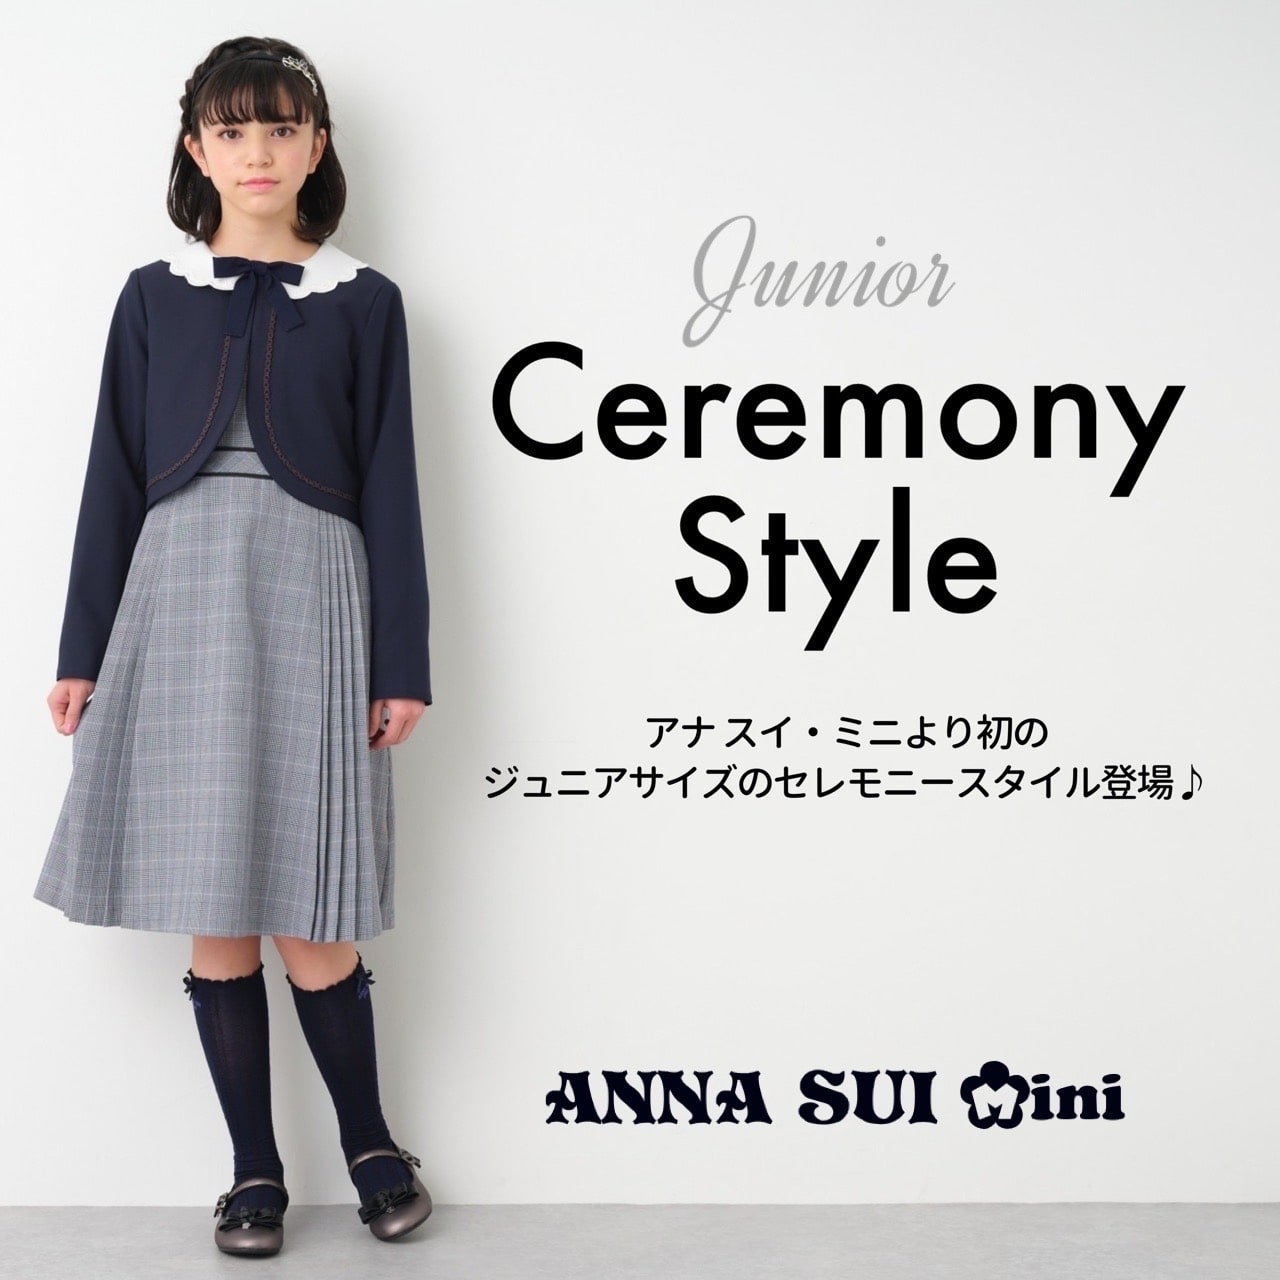 アナスイミニ ANNA SUI mini フォーマル 入学式 ワンピース-